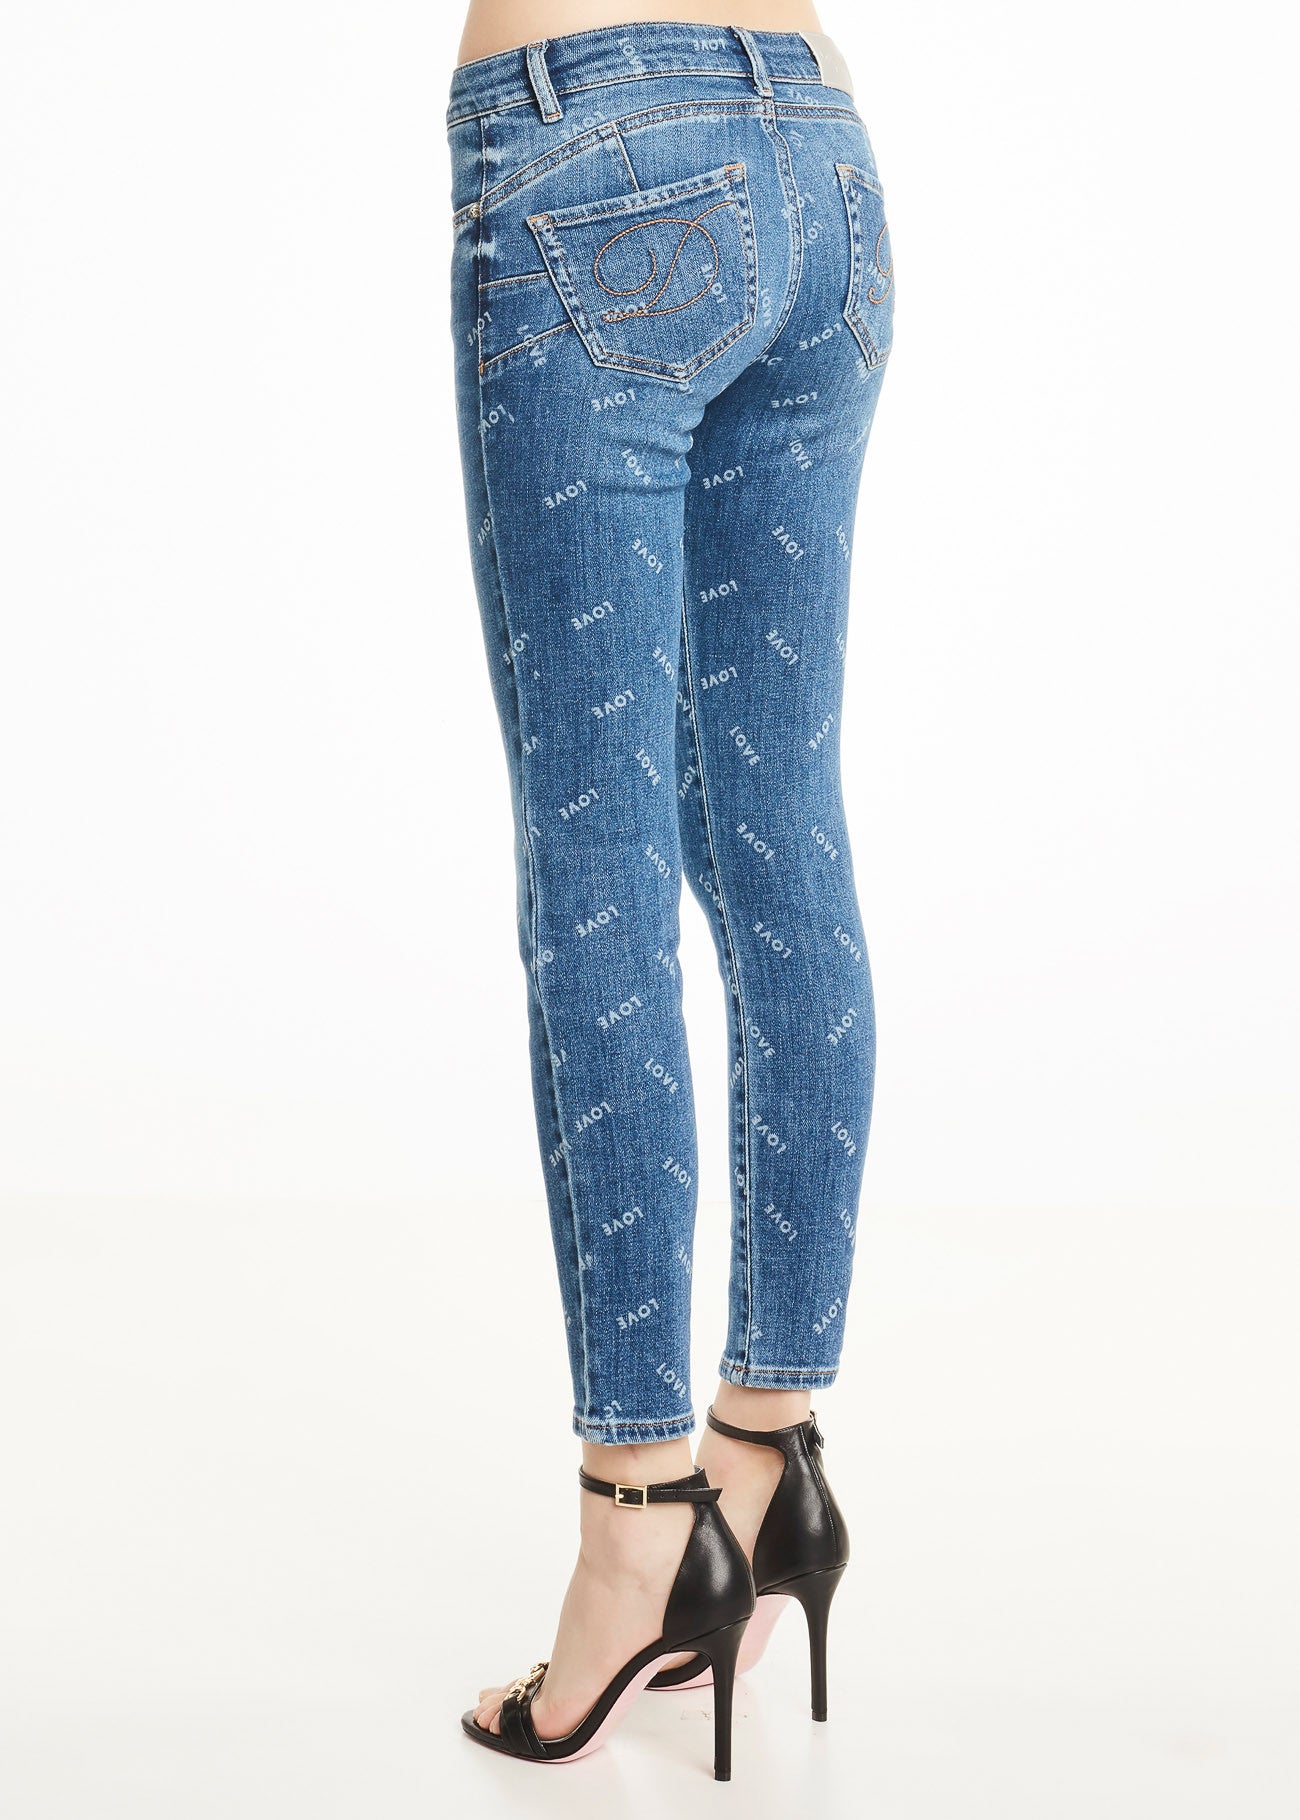 Denny Rose Jeans skinny jeans Zita